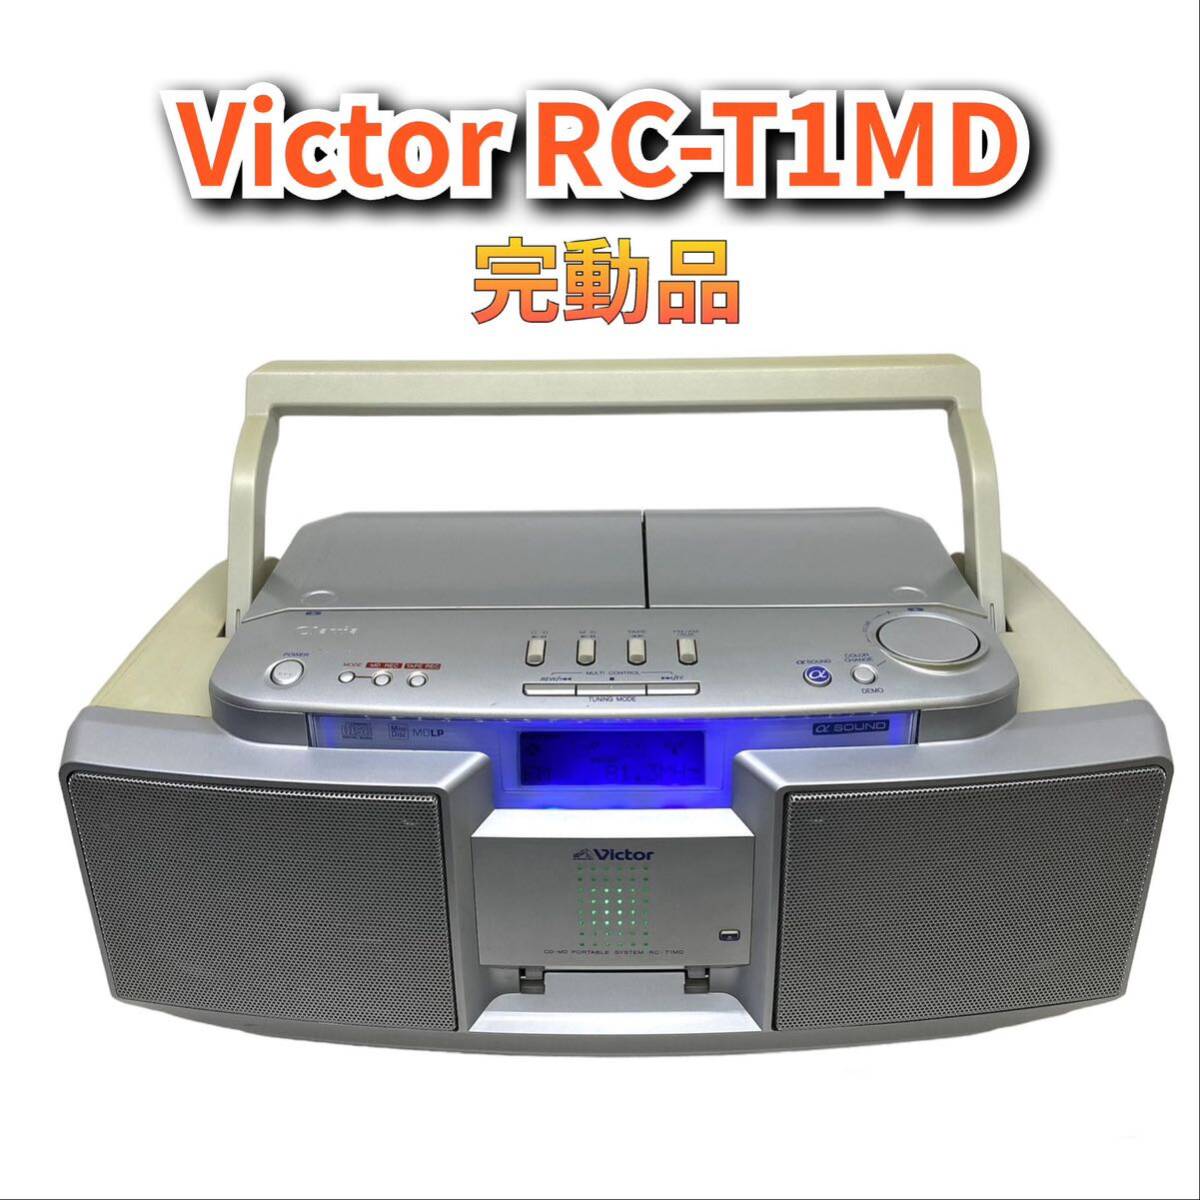 【完動品】ビクター CD MD ポータブルラジカセ RC-T1MD 再生録音OK 保証あり 迅速発送_画像1